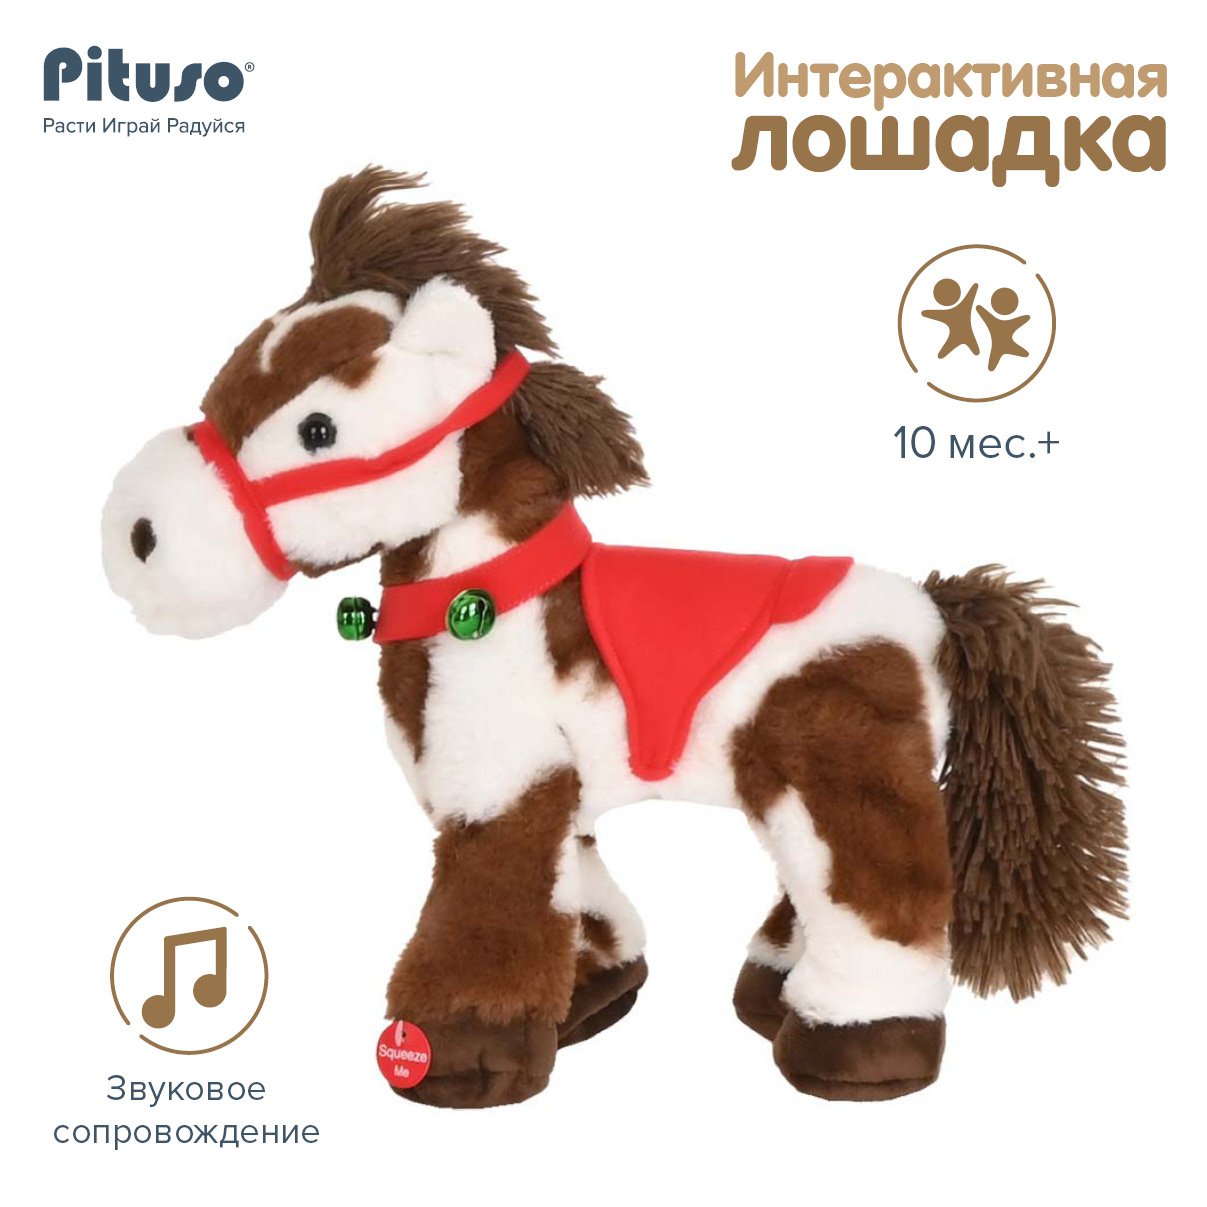 Мягкая интерактивная игрушка Pituso Маленькая лошадка интерактивная игрушка pituso маленькая лошадка